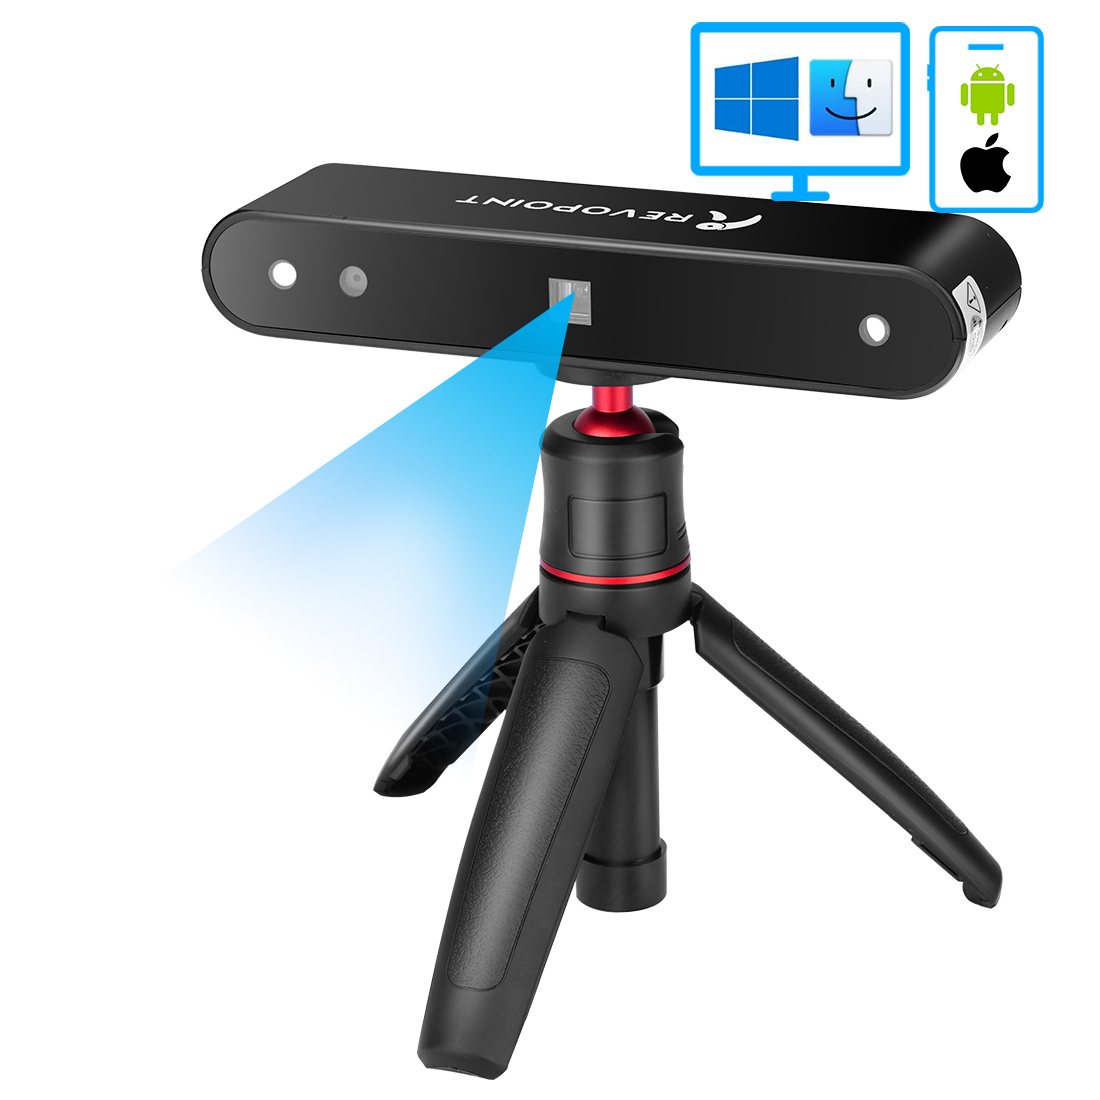 限定モデル3Dスキャナー フルカラー 赤外線構造光デュアルカメラ3Dスキャナ― 設計3Dプリント用 コンパクトで携帯可能 解像度0.3mmスキャンテクノロジー搭載  3Dデザイン 3Dレーザスキャナー